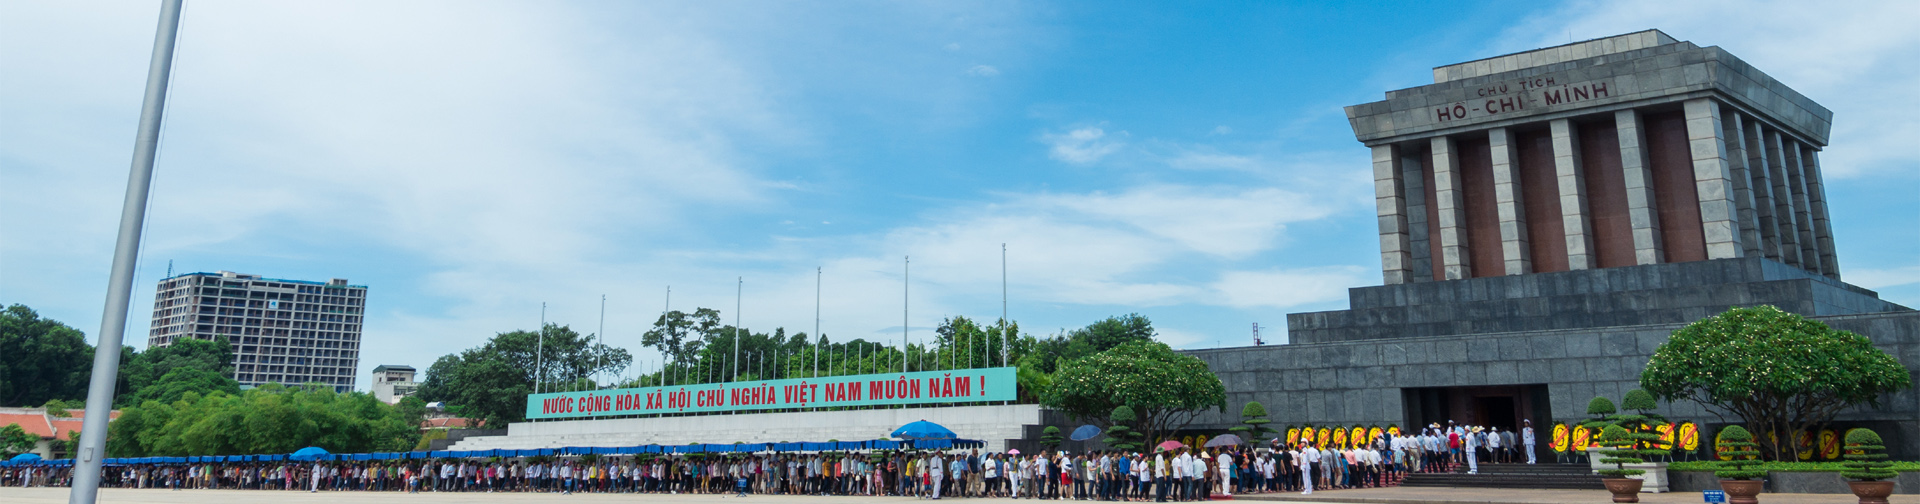 베트남 대표사무소